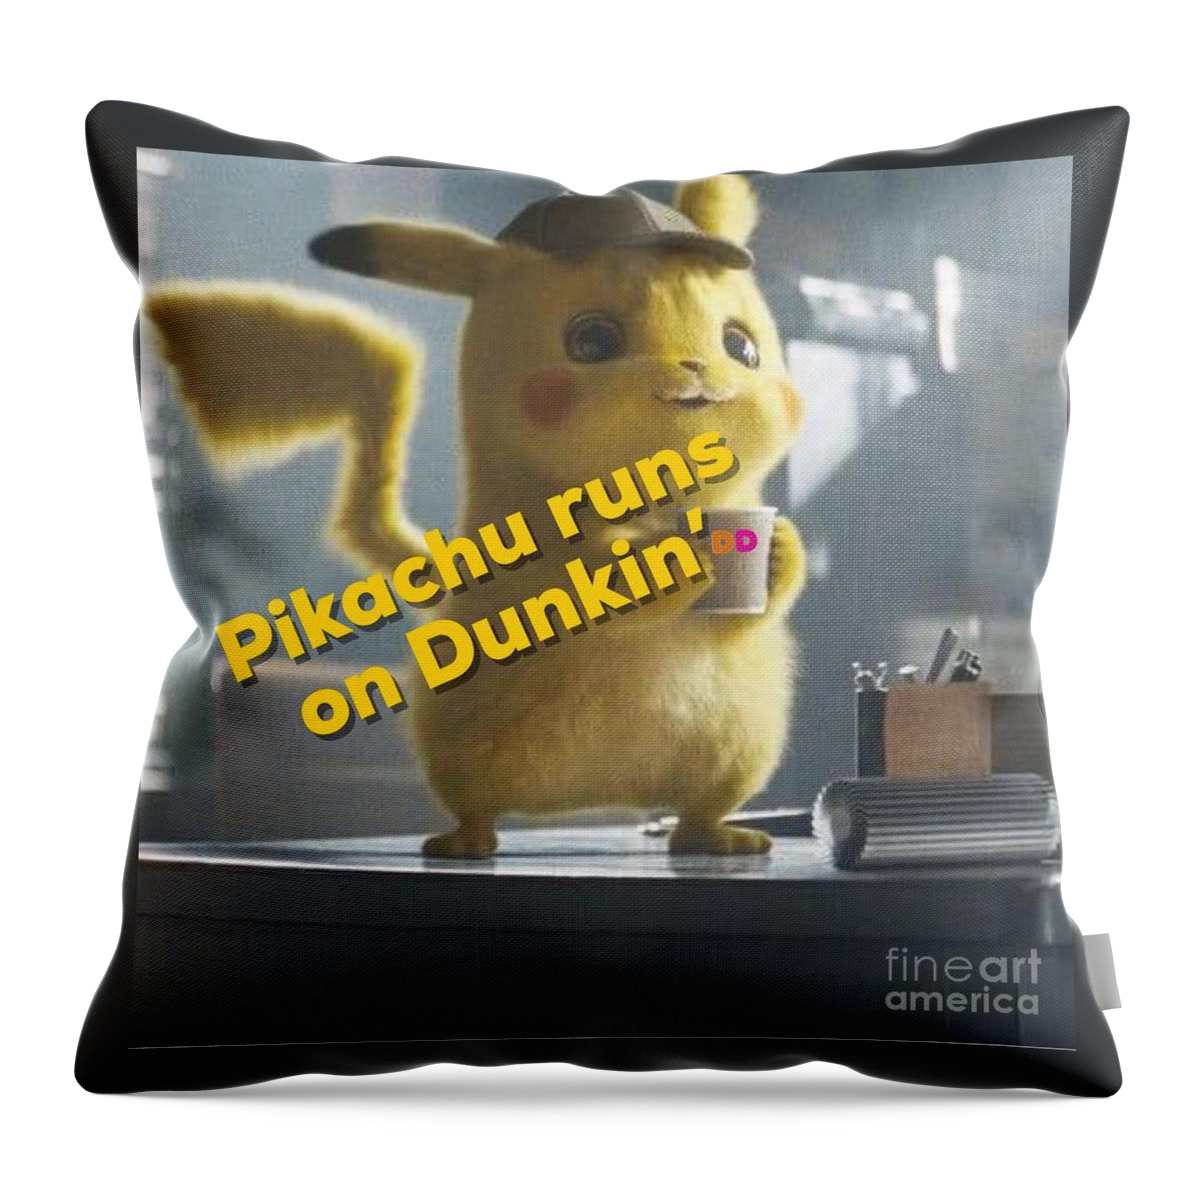 Detective Throw Pillow featuring the digital art Pikachu Runs on Dunkin by Elena Pratt